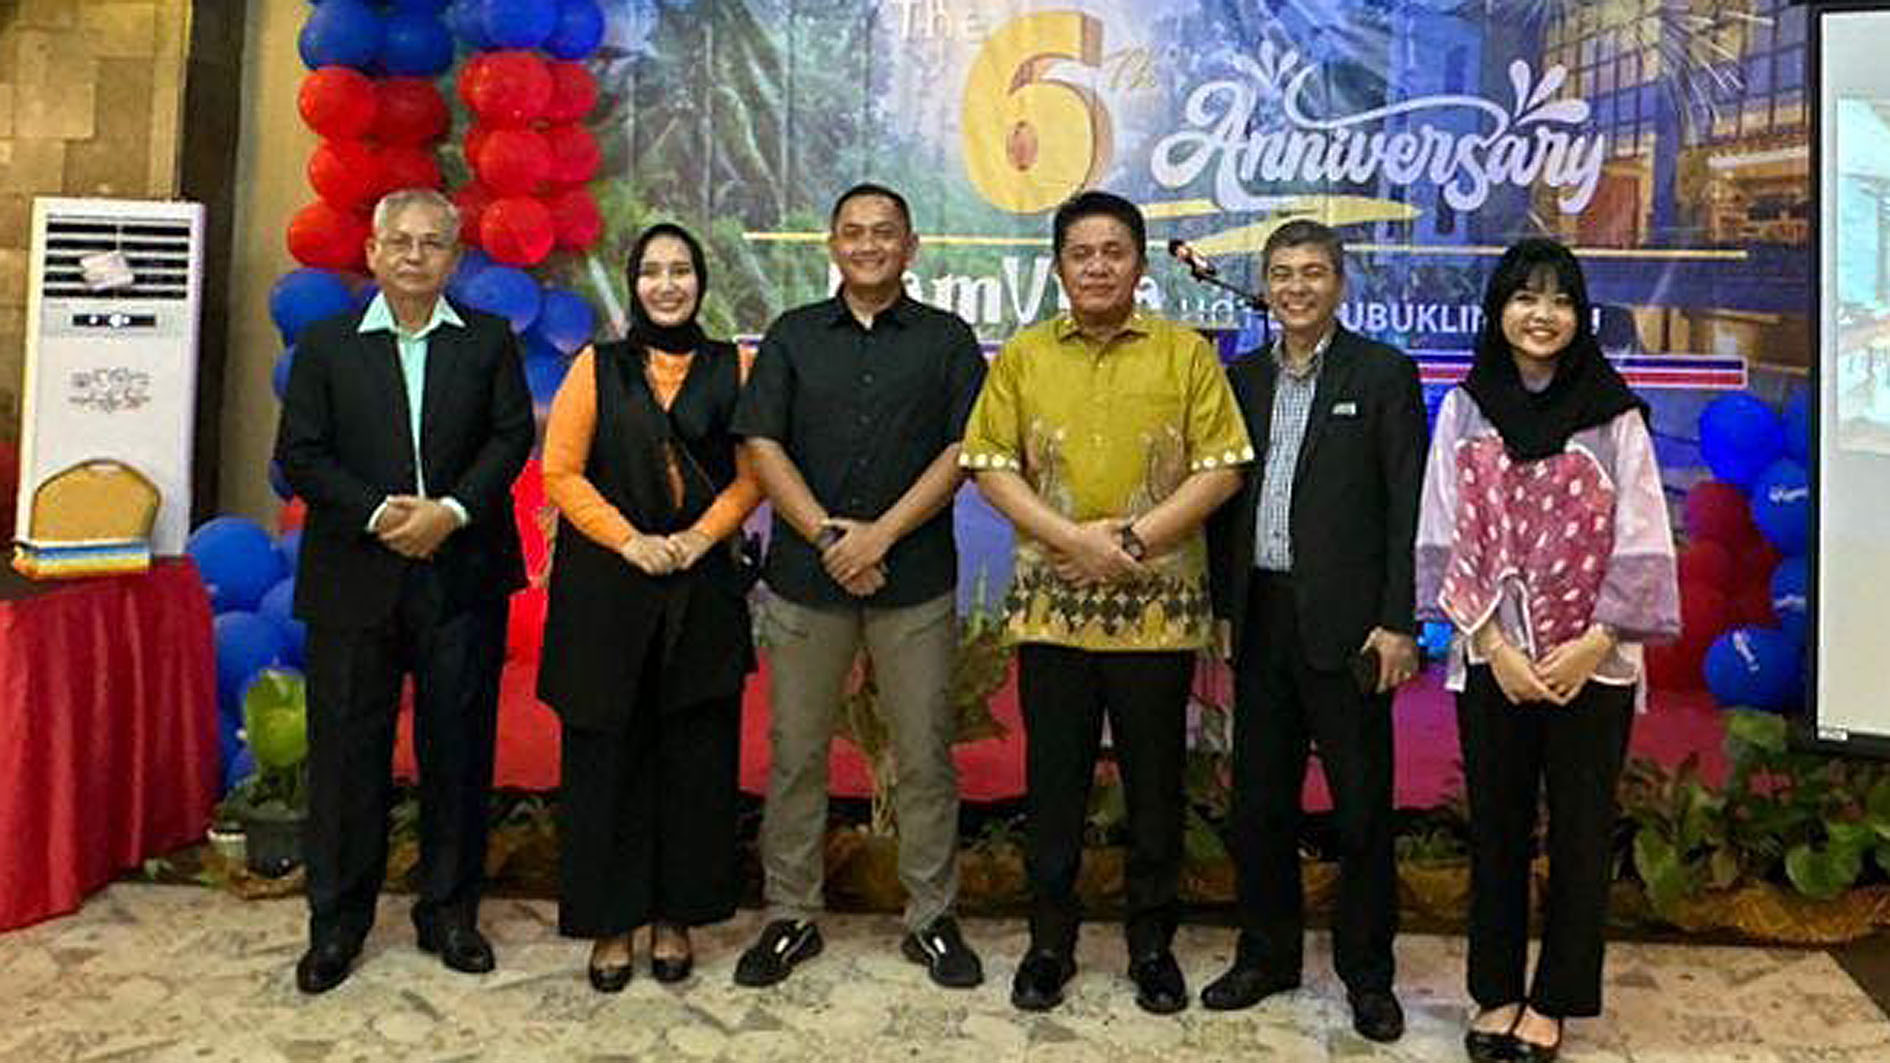 Anniversary 6th FamVida Hotel Lubuklinggau Dihadiri Mantan Gubernur Sumatera Selatan H Herman Deru